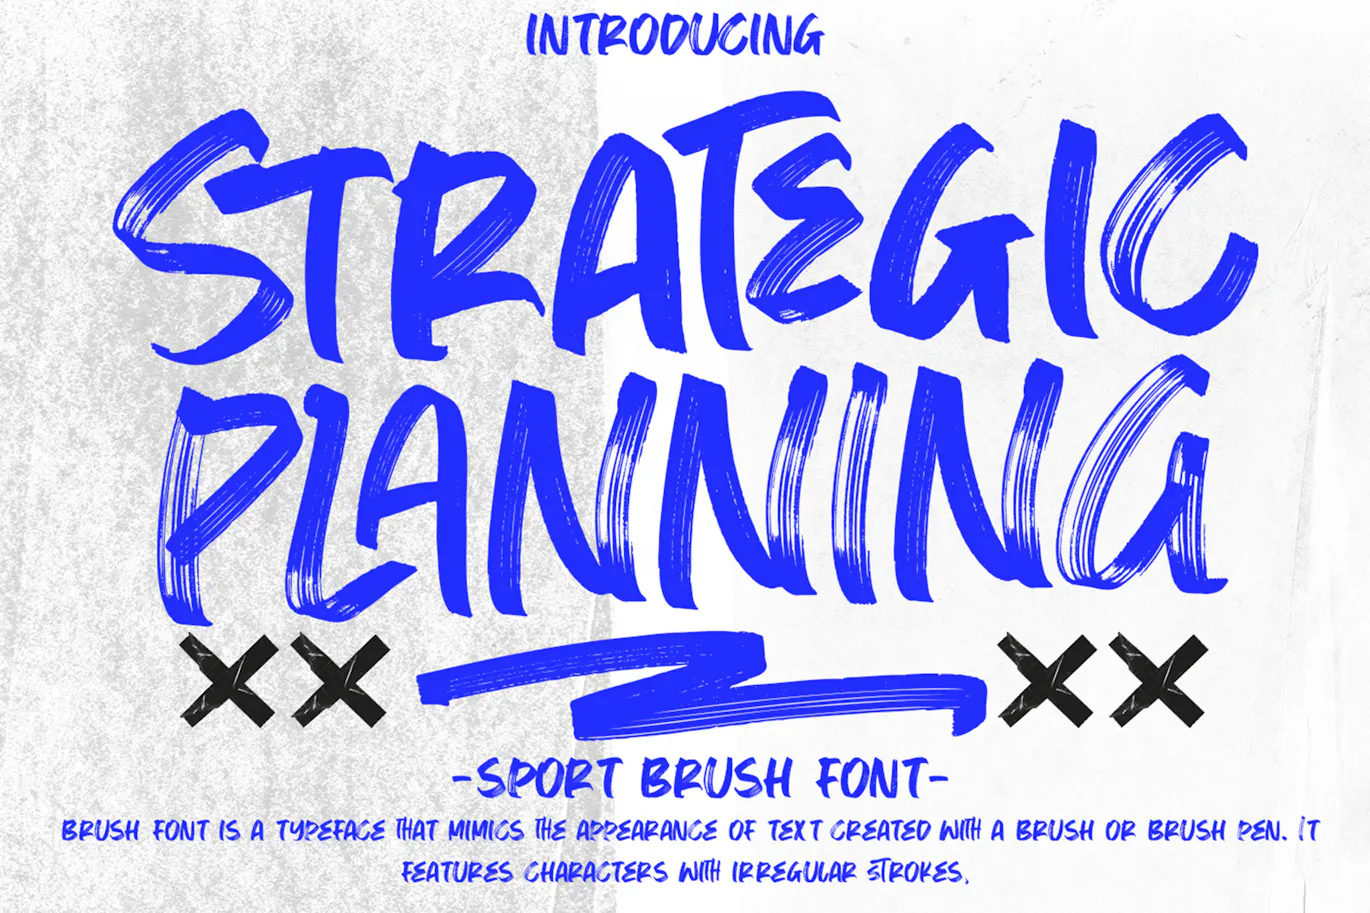 运动感英文手写画笔字体 - Strategic Planning 设计字体 第7张